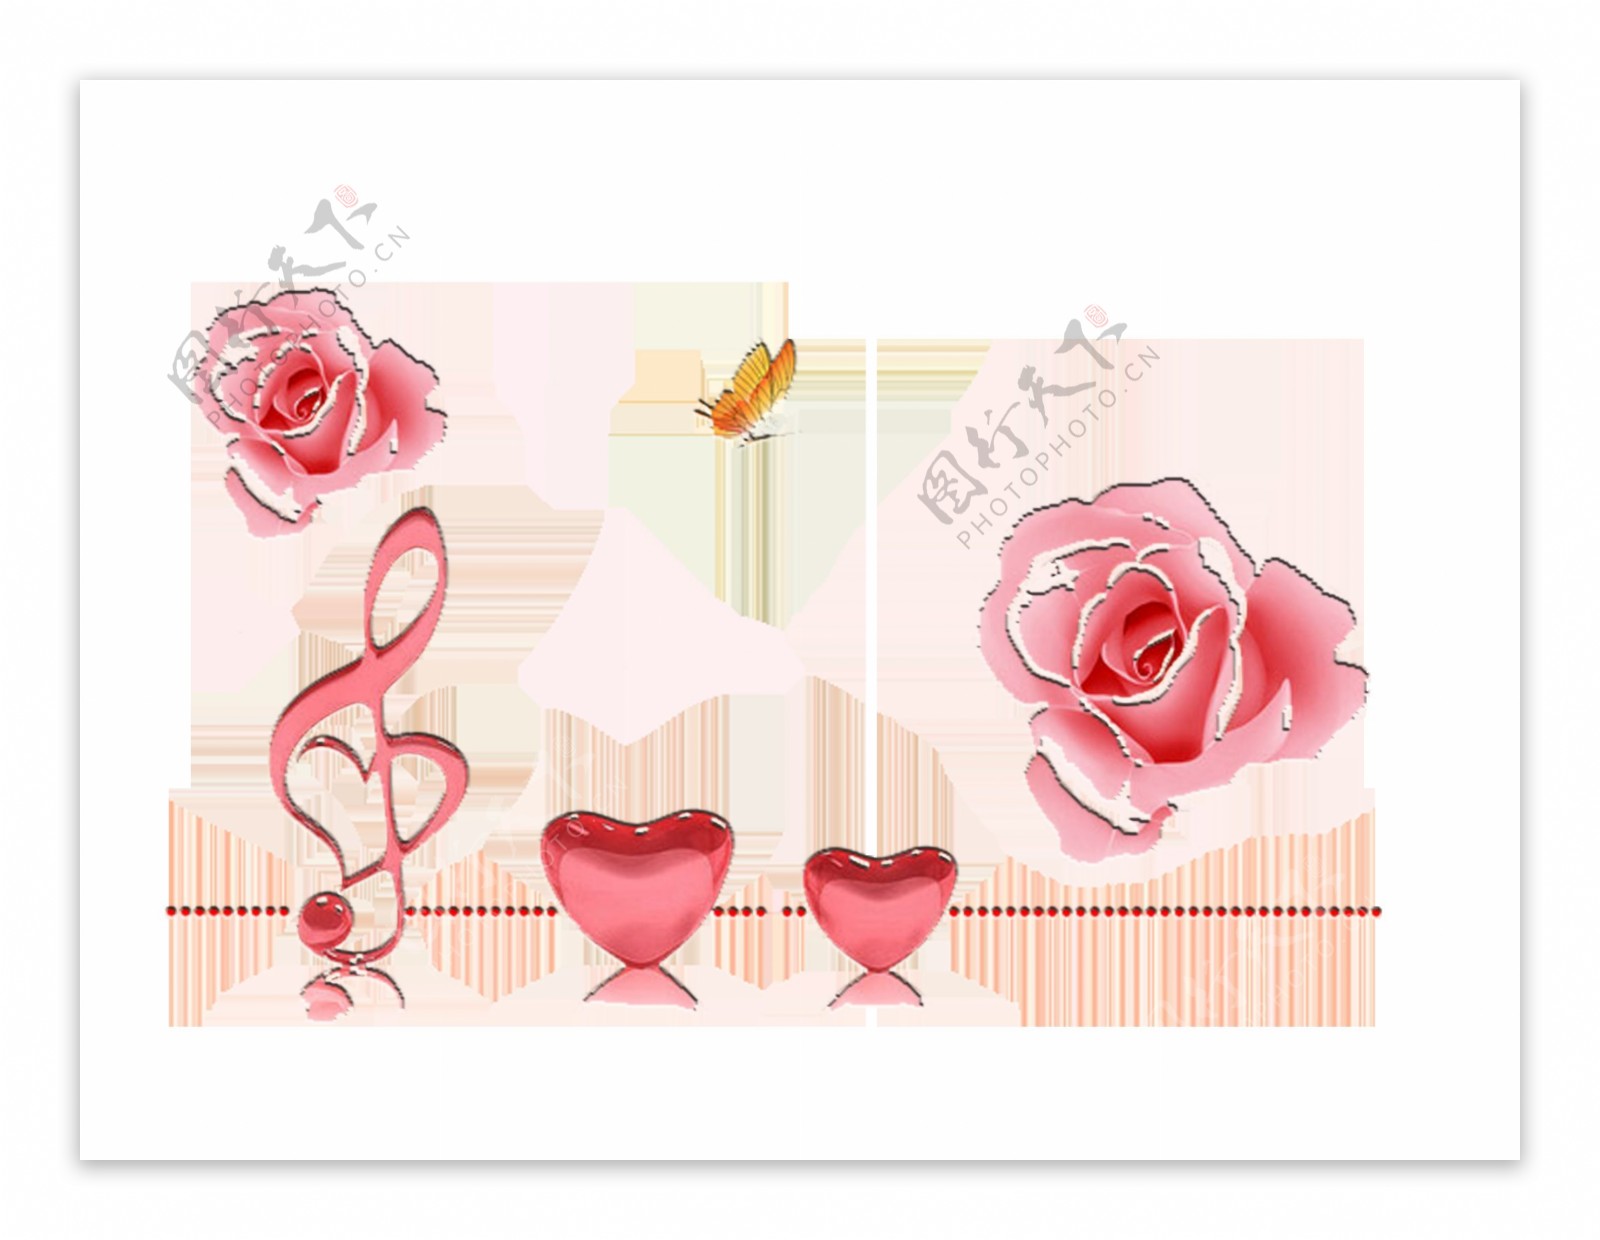 粉色情人节爱心玫瑰花朵元素设计